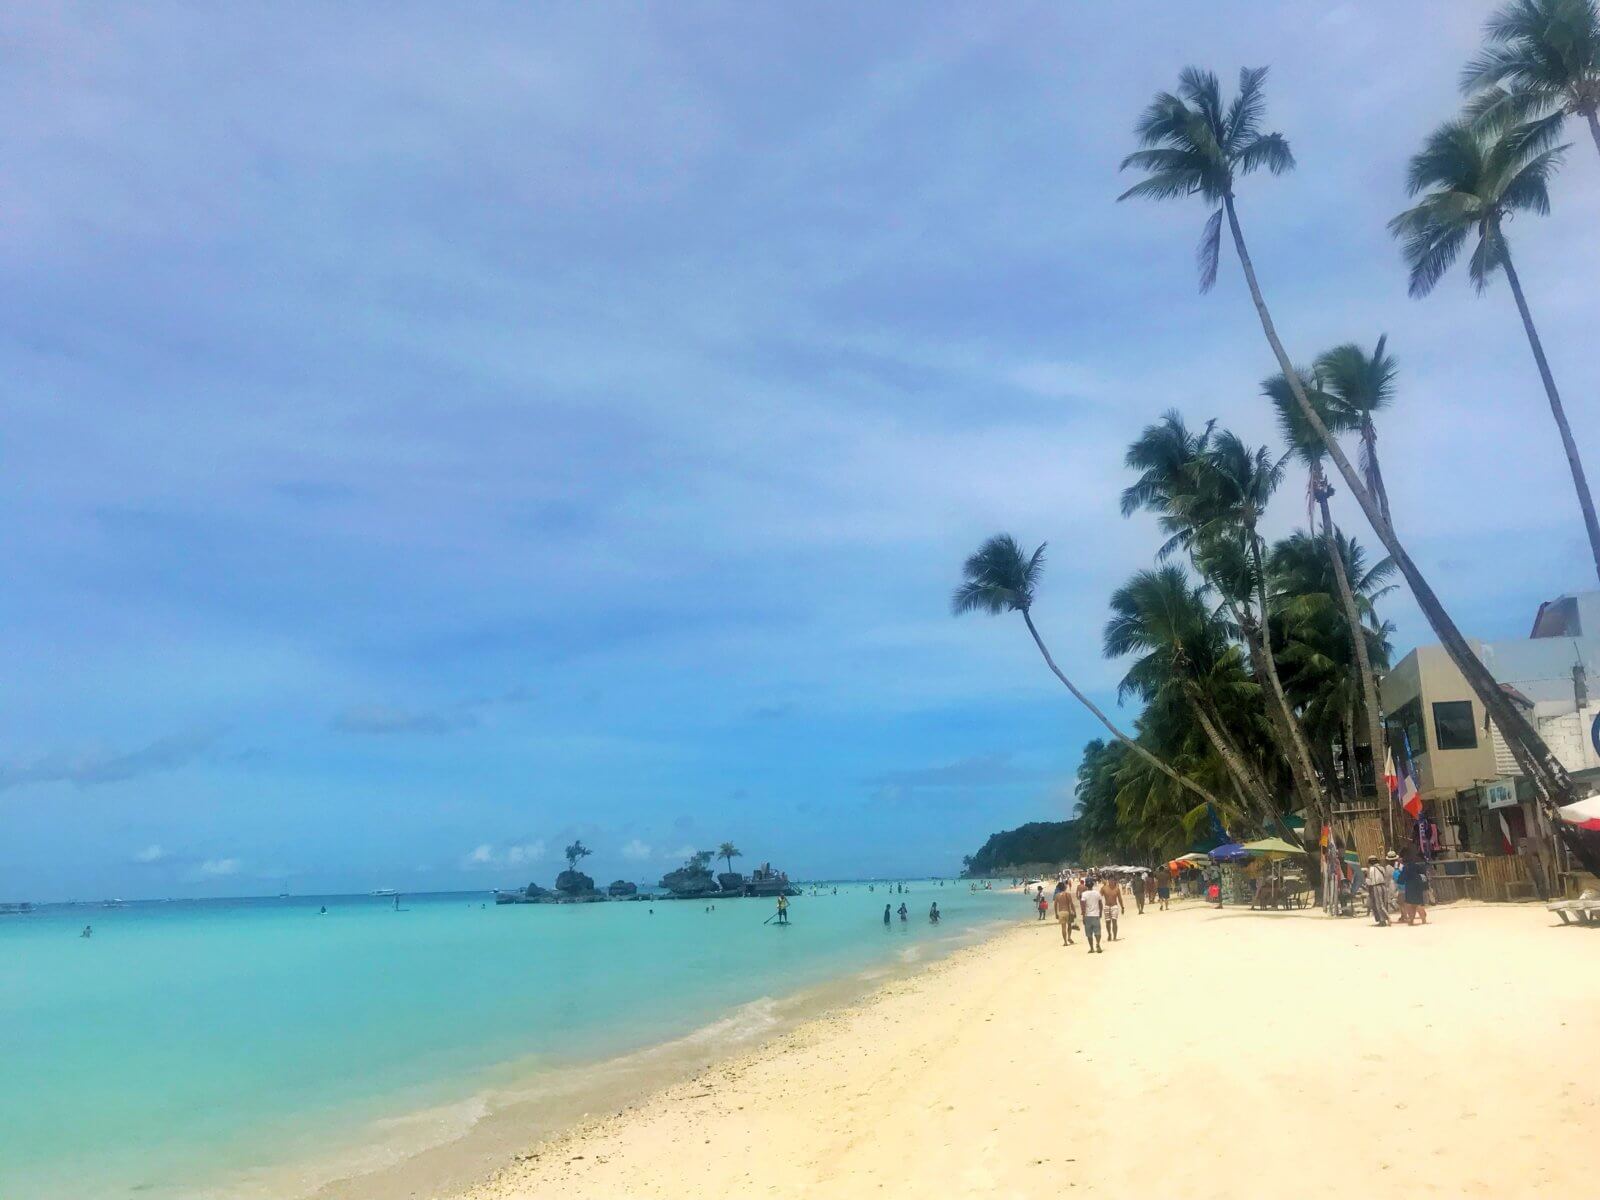 The White Beach, Boracay